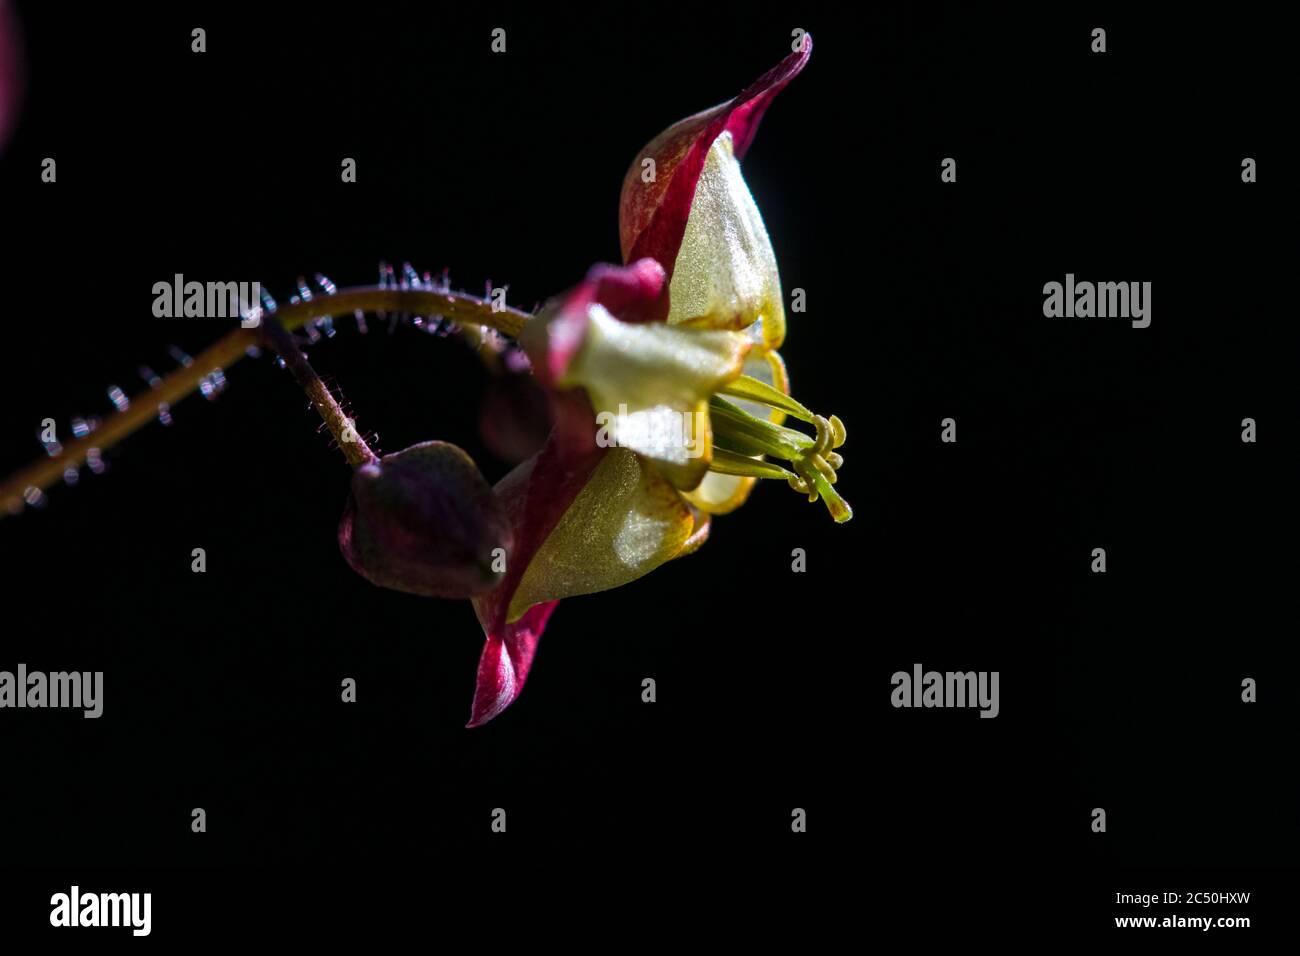 Alpine barrenwort (Epimedium alpinum), flower against black background Stock Photo